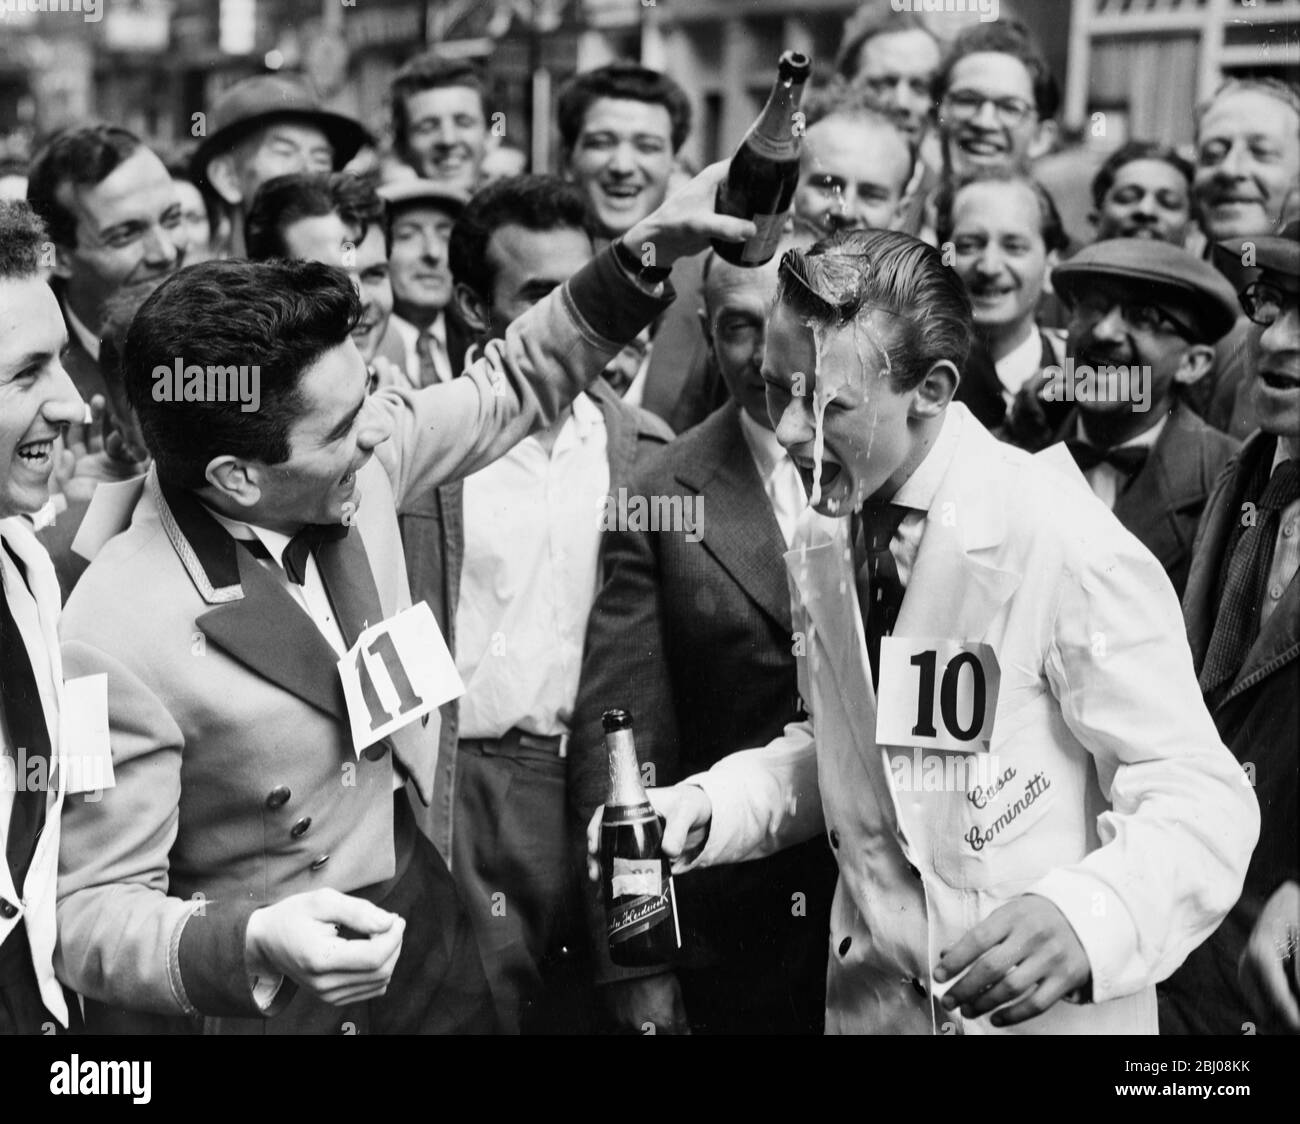 Michael Bushell, il più giovane concorrente di 15 anni, è spruzzato con champagne dal secondo posto Guido adorne, dopo aver vinto la gara dei camerieri Soho Fair da Soho Square a Greek Street, mentre trasportava un vassoio con mezza bottiglia di vino, un bicchiere e un vassoio di cenere Soho, Londra, Inghilterra. - 13 luglio 1958 Foto Stock